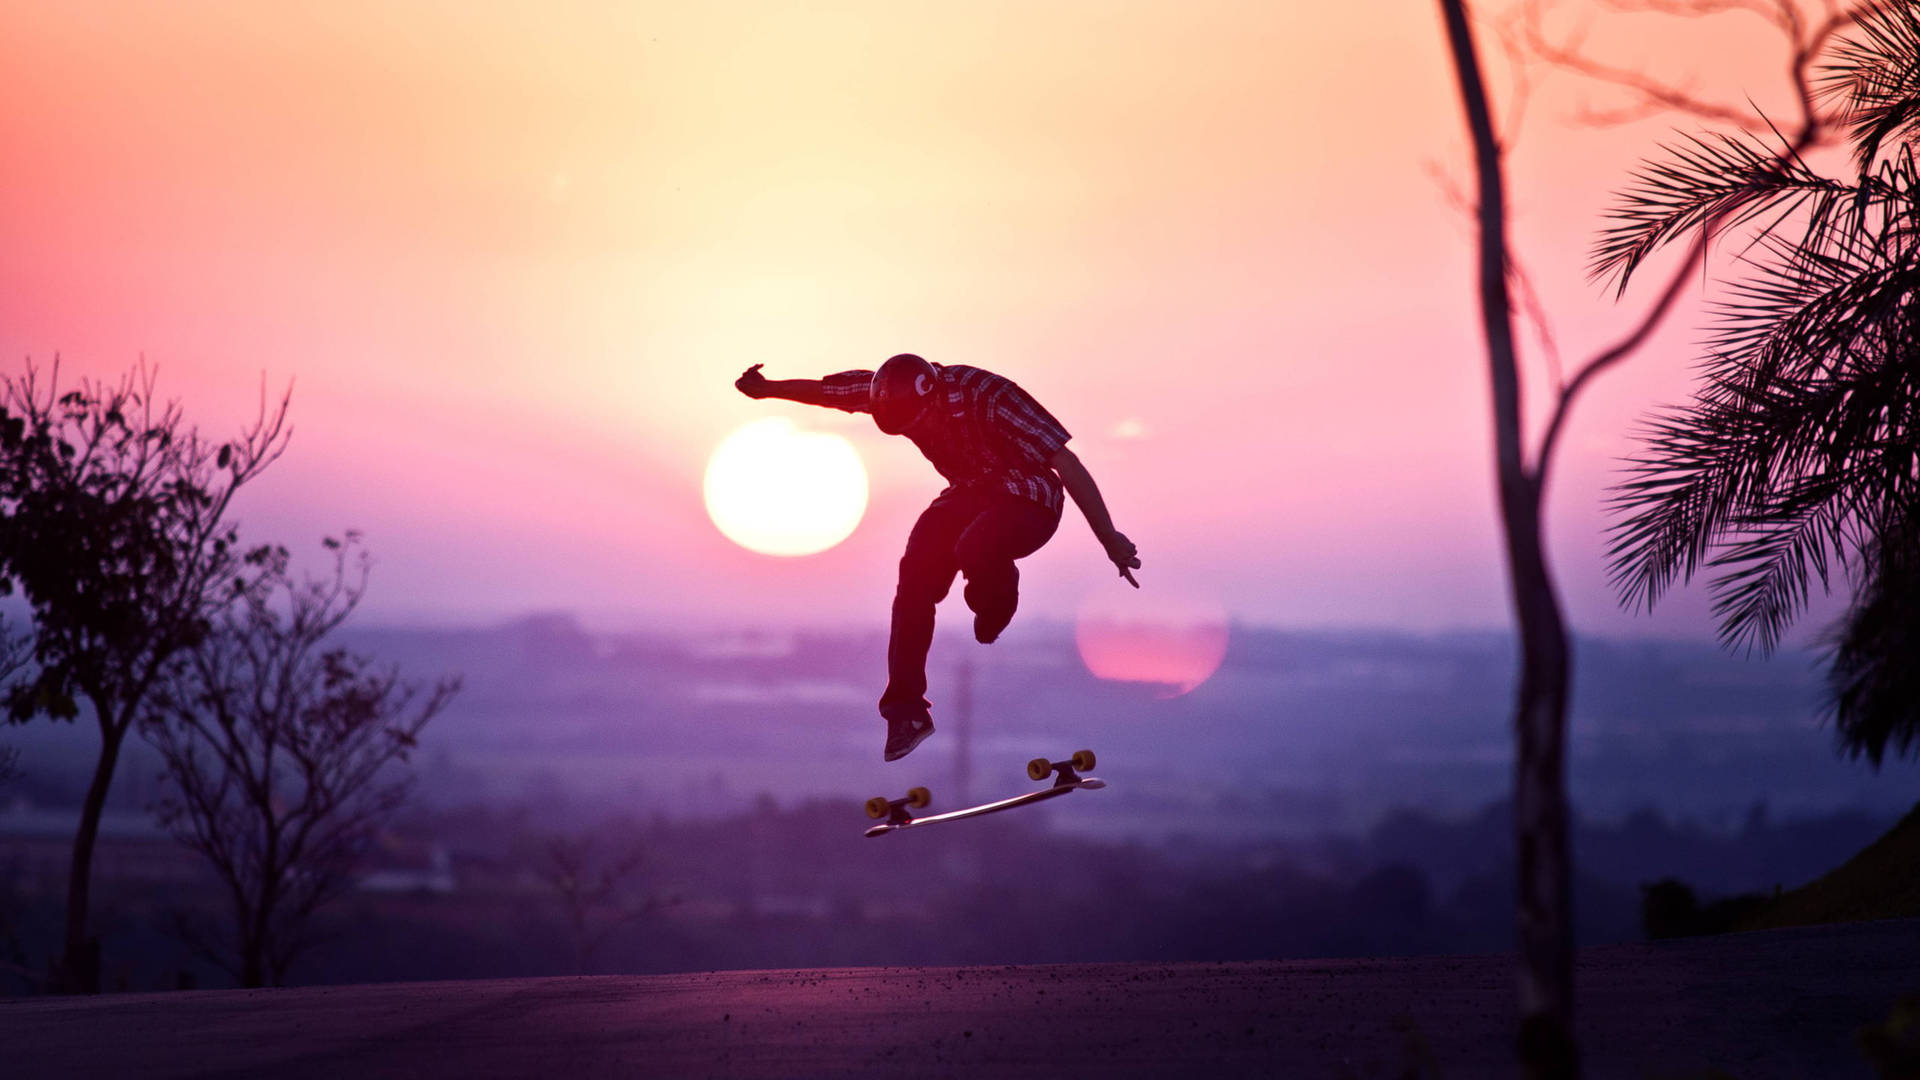 Extreme Sports Skateboarding Sunset Background